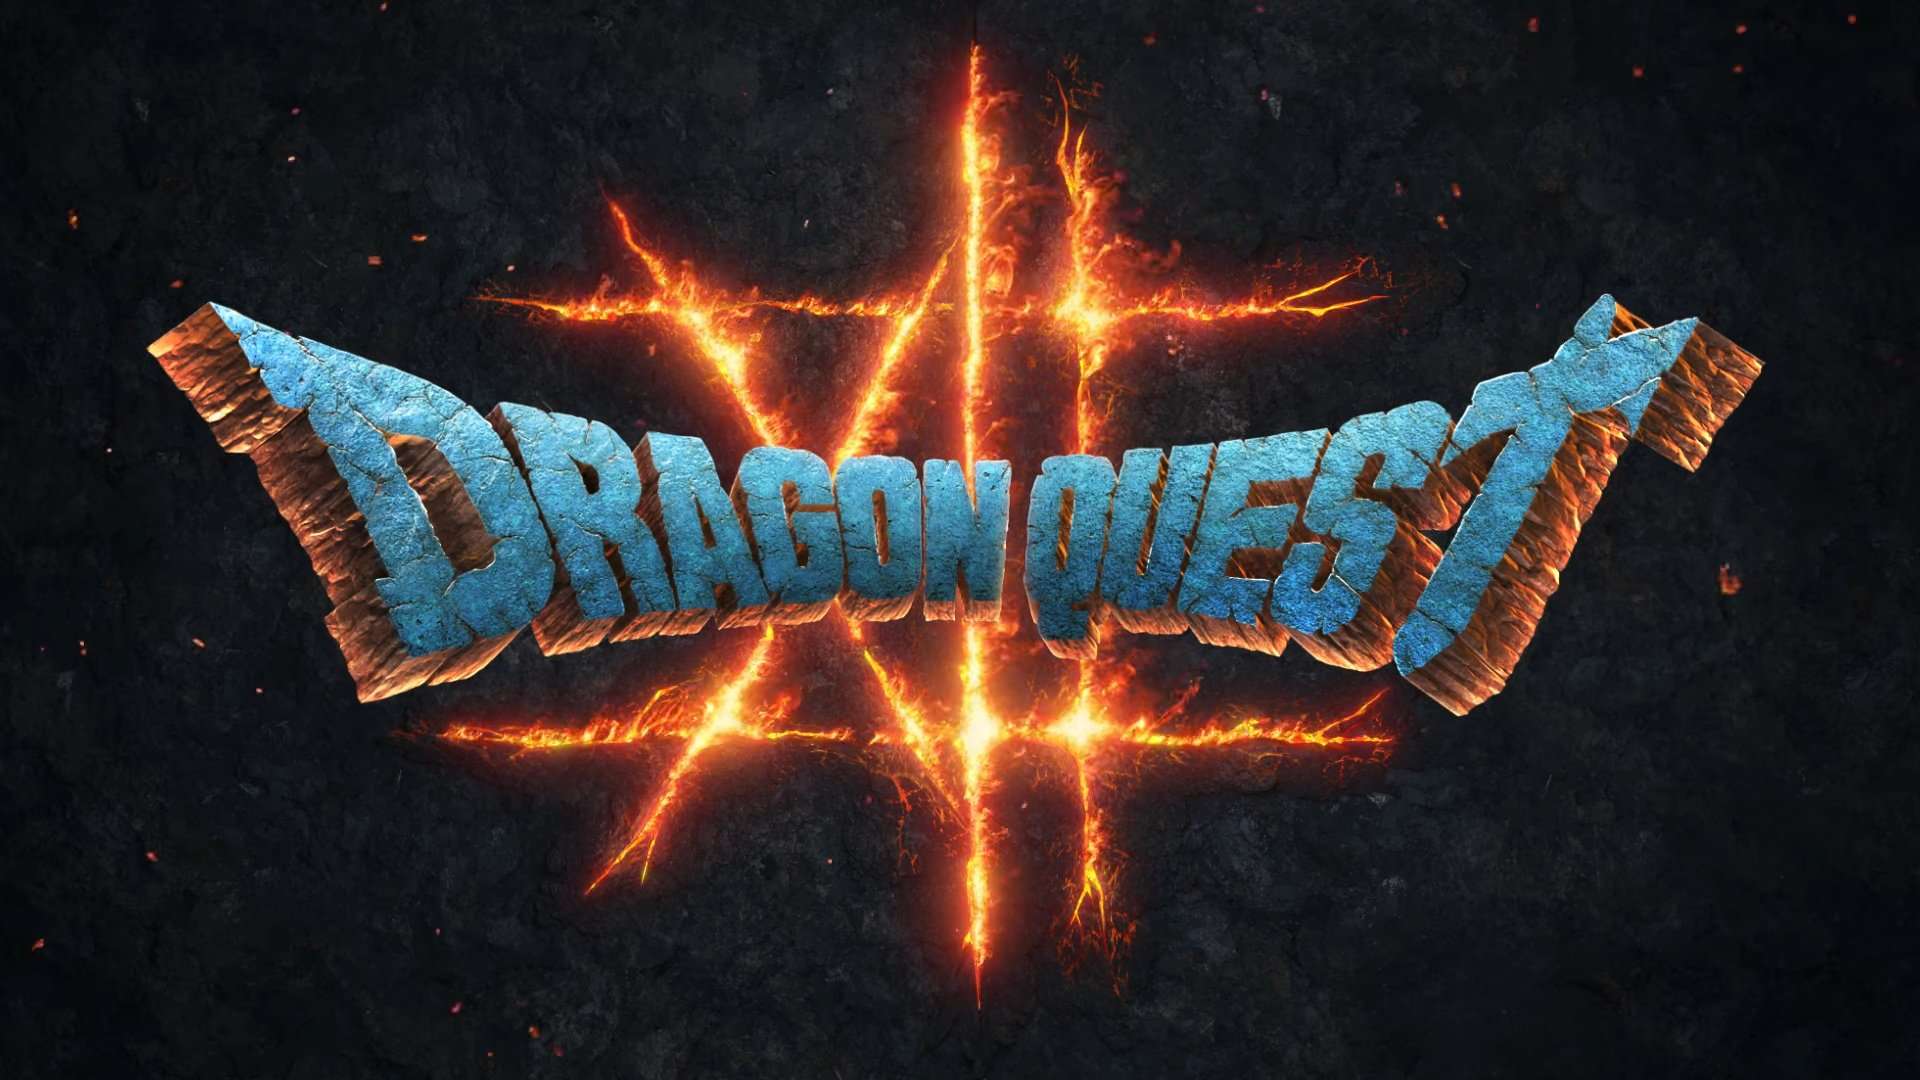 Dragon Quest XII hará uso del Unreal Engine 5 para su desarrollo